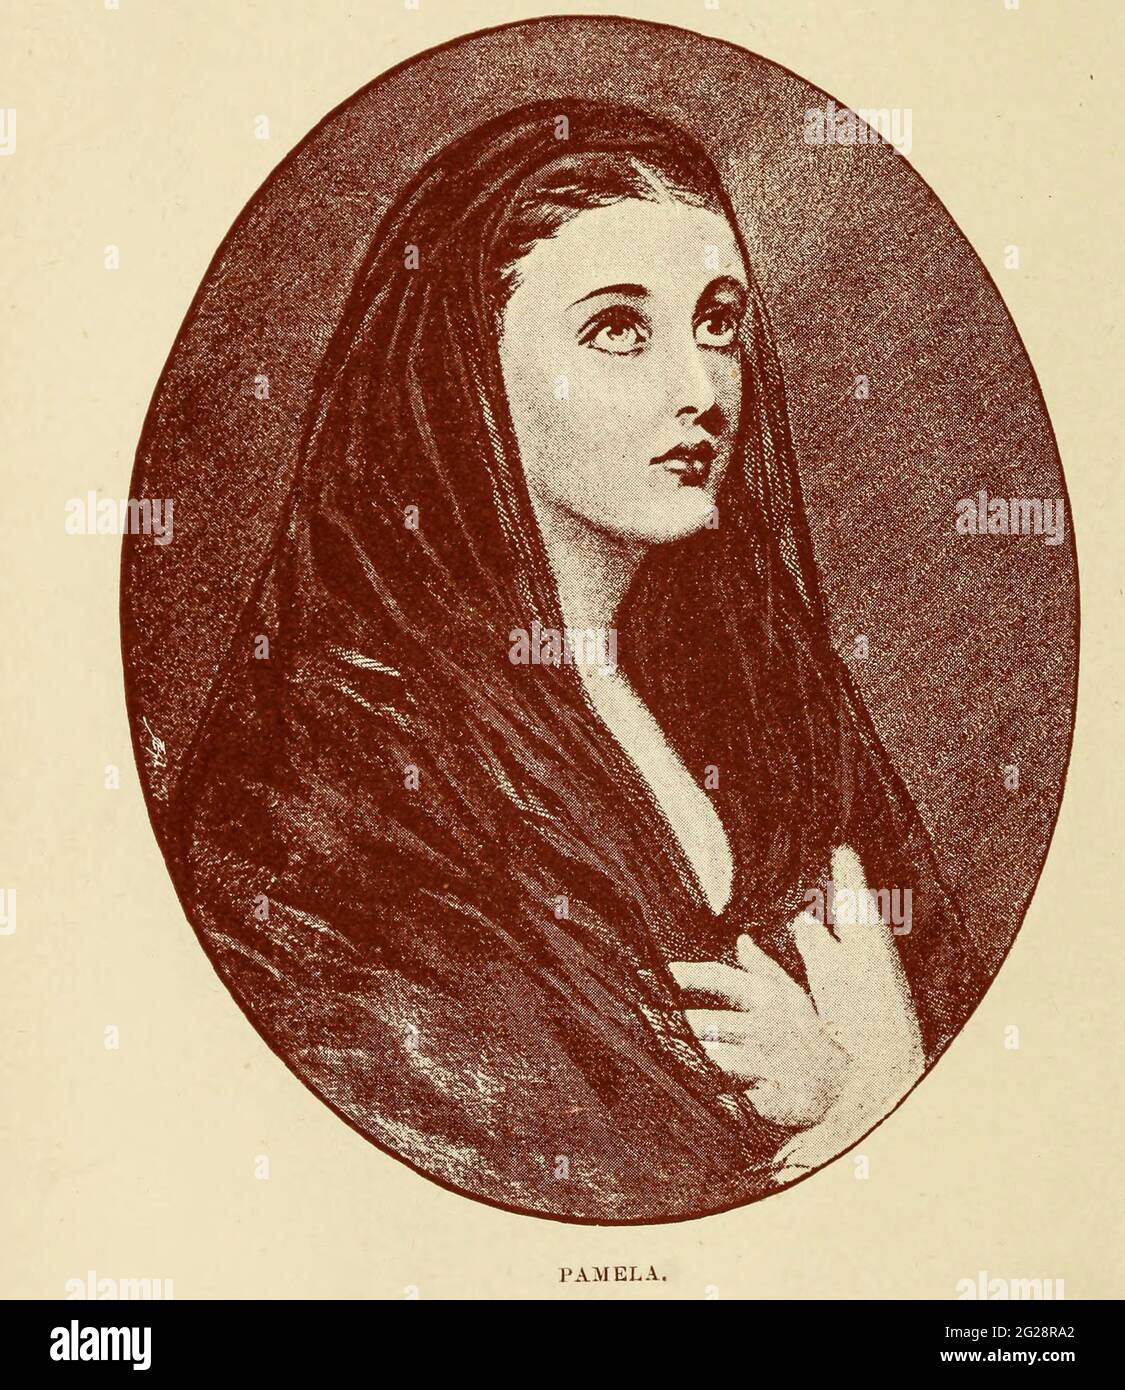 Pamela - Lady Edward FitzGerald Stéphanie Caroline Anne Syms, Lady Edward FitzGerald (c. 1773. – 9. November 1831) war die Ehefrau von Lord Edward FitzGerald, dem radikalen Revolutionär und führenden Vereinigten Iren, und war selbst eine begeisterte Unterstützerin der irischen Unabhängigkeit, die damals kaum weniger gefeiert wurde als Lord Edward selbst. Sie wurde als Stéphanie Caroline Anne Syms geboren und als „Pamela“ bekannt. Ihre Herkunft ist ungewiss. Sie wurde als adoptierte Tochter von Félicité de Genlis beschrieben; es wird normalerweise angenommen, dass sie eine unanerkannte Tochter von Madame de Genlis und Louis Philip II, Herzog, war Stockfoto